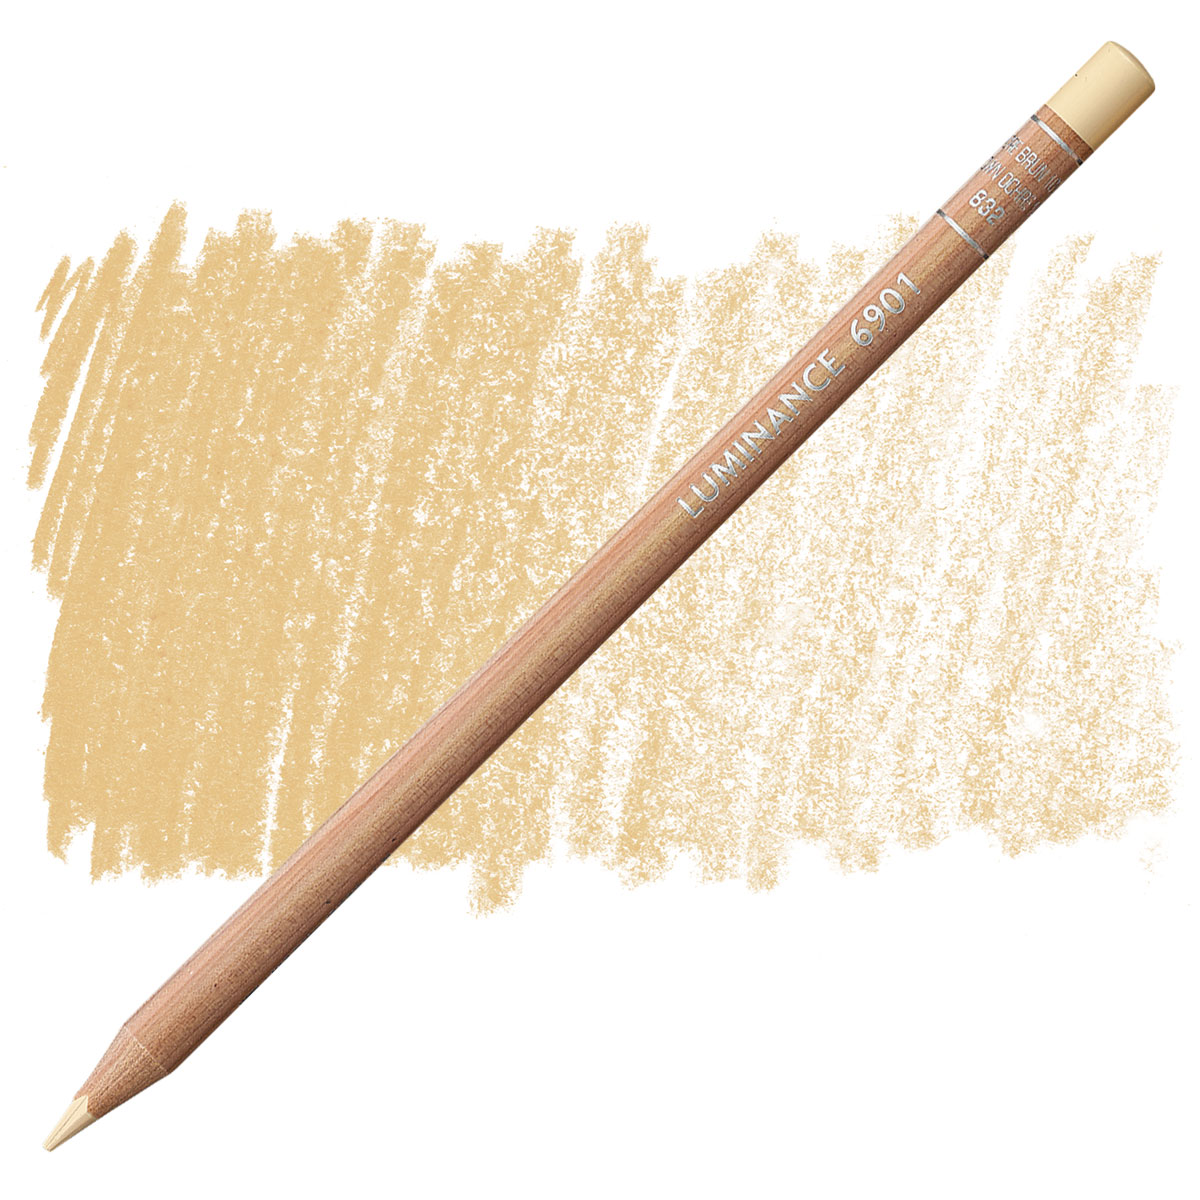 Caran d'Ache Luminance 6901® Colour Pencils - Brown or Green